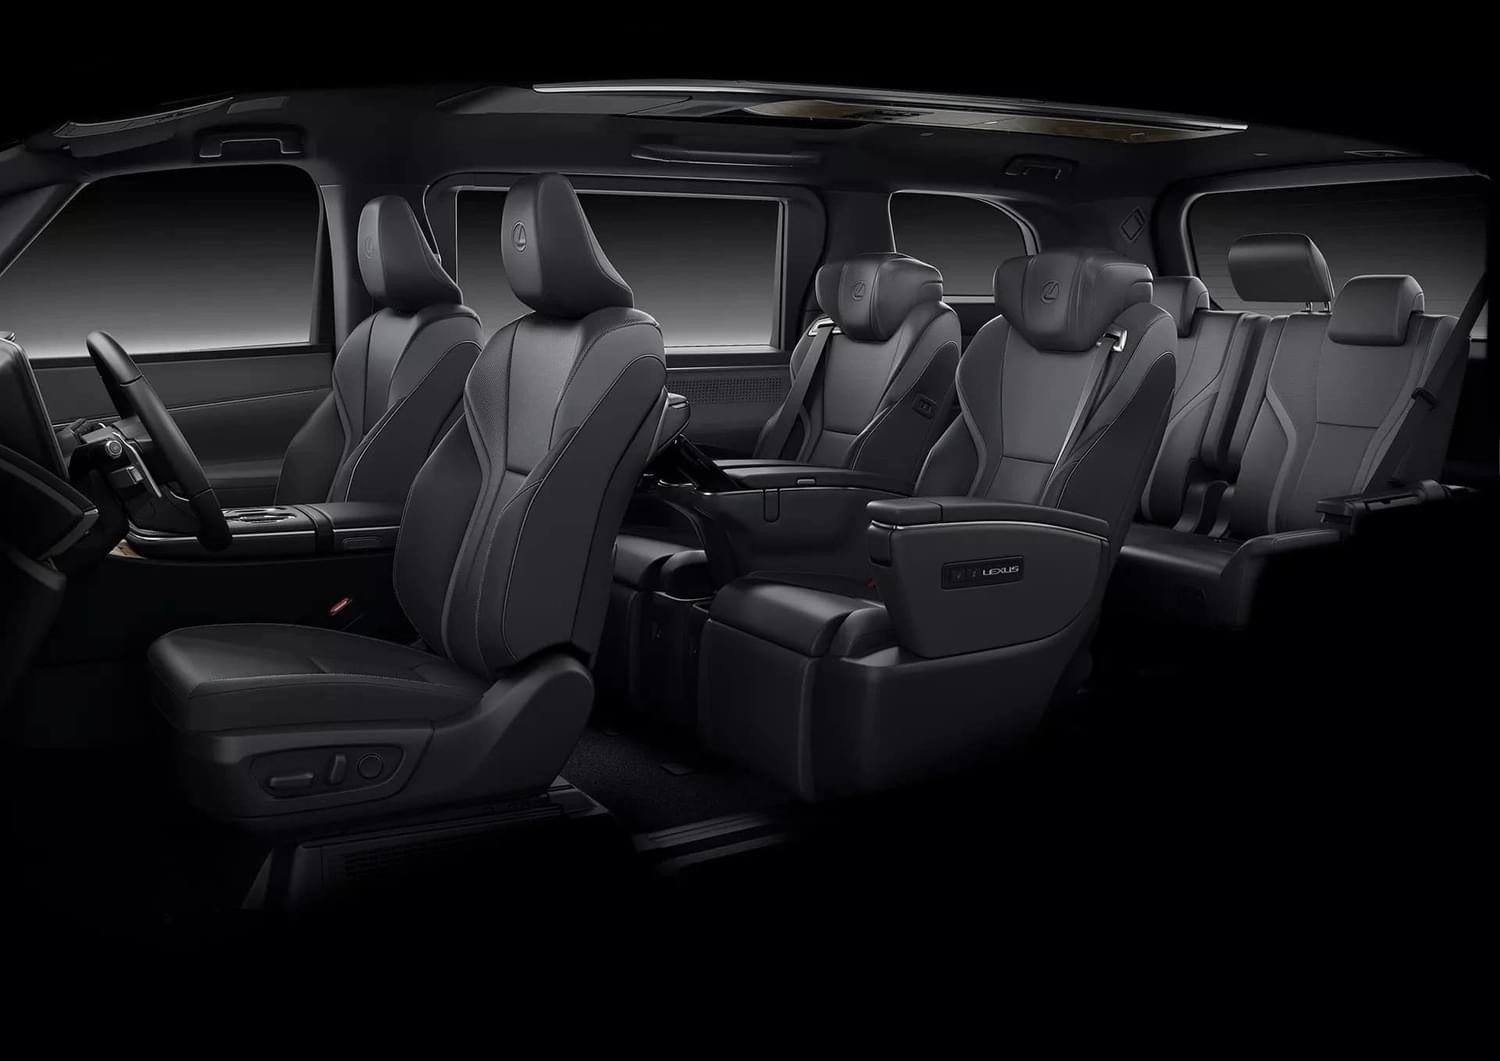 Thiết kế nội thất Lexus LM500h 6 chỗ màu đen cao cấp